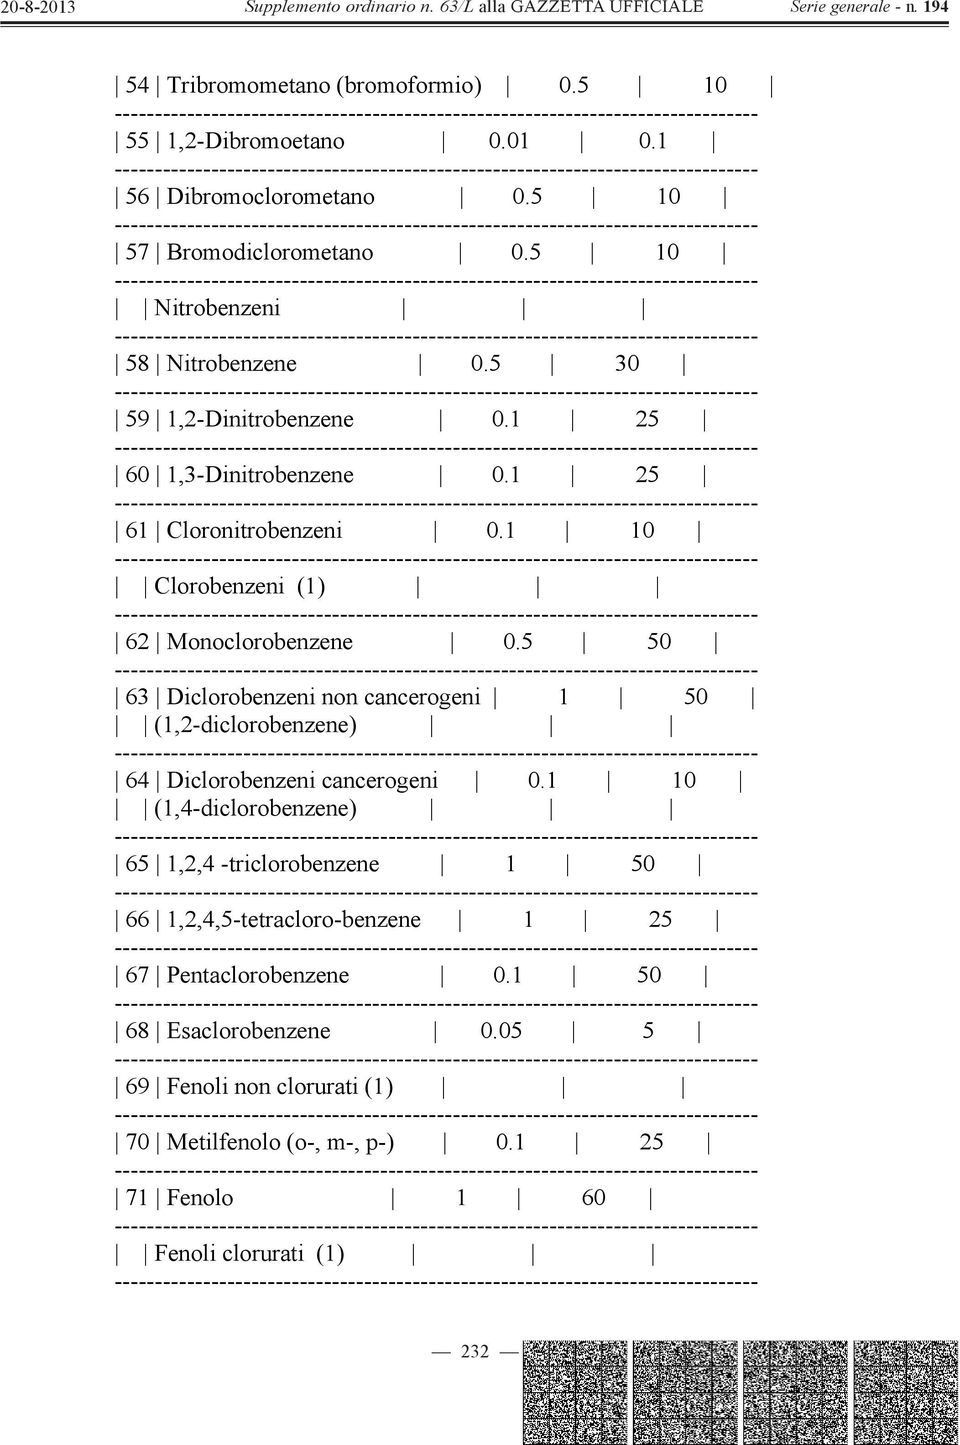 5 50 63 Diclorobenzeni non cancerogeni 1 50 (1,2-diclorobenzene) 64 Diclorobenzeni cancerogeni 0.